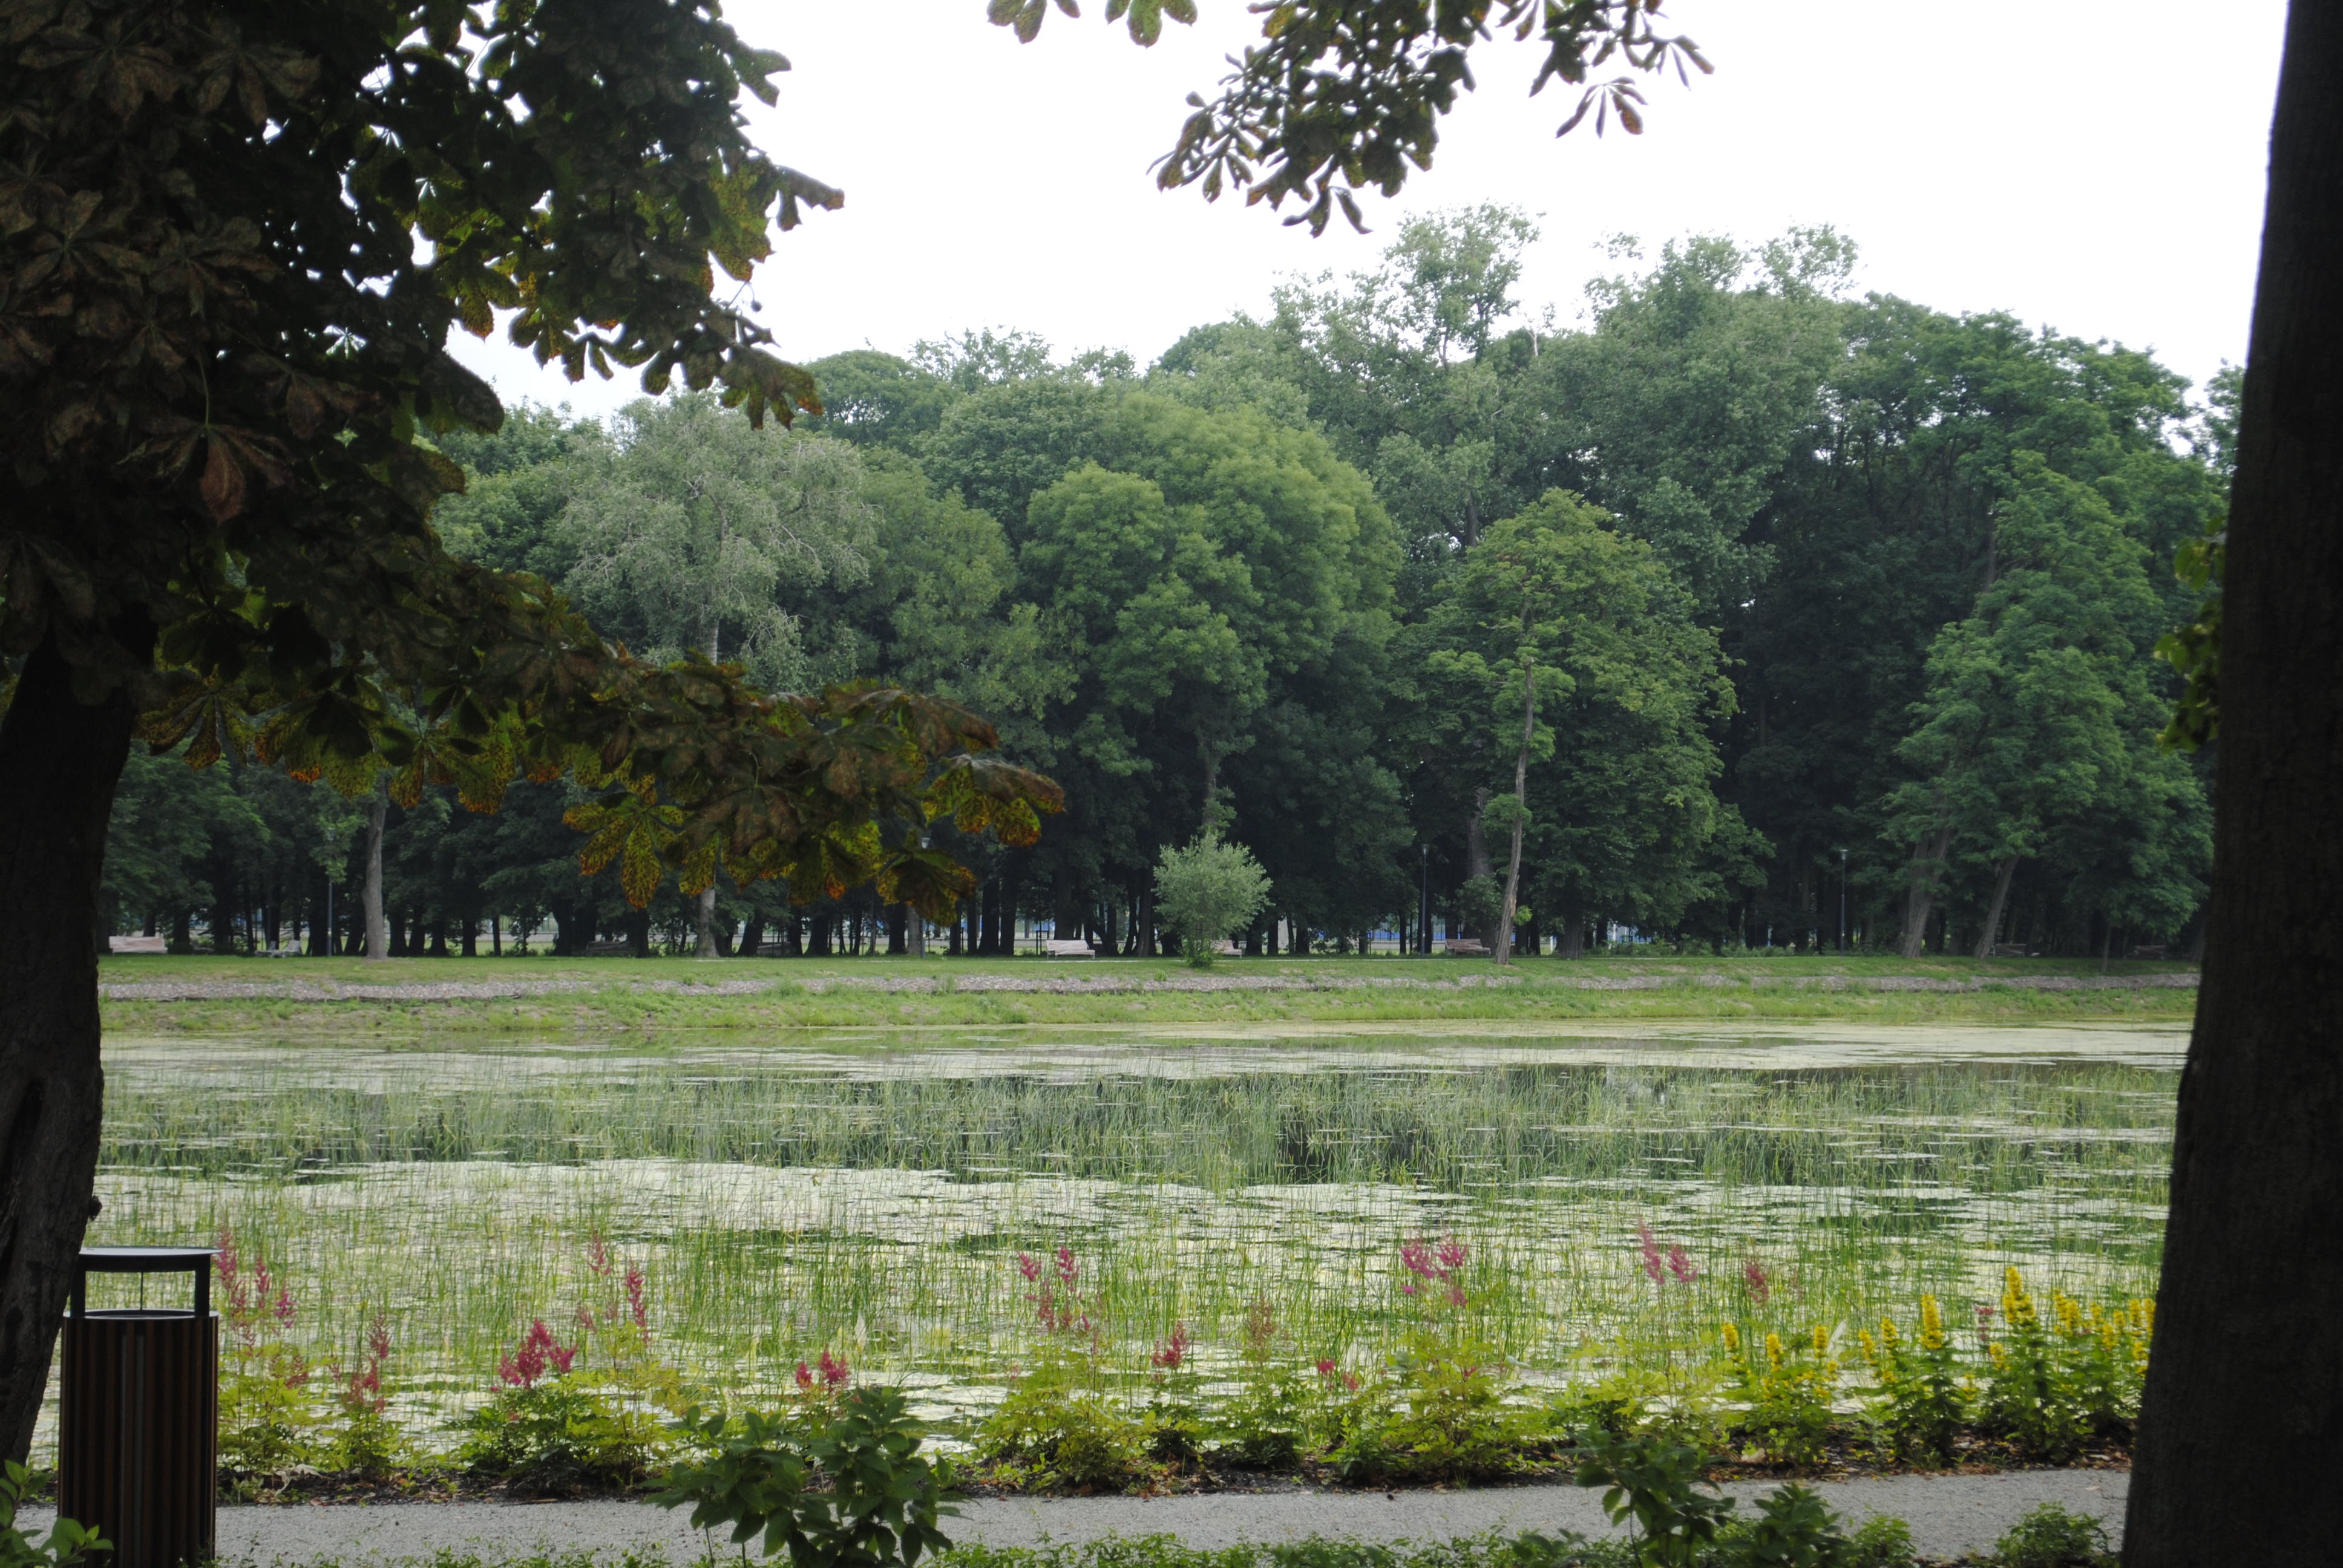 Park w Lubartowie wkrótce do otwarcia, chociaż miasto ma zastrzeżenia - Zdjęcie główne